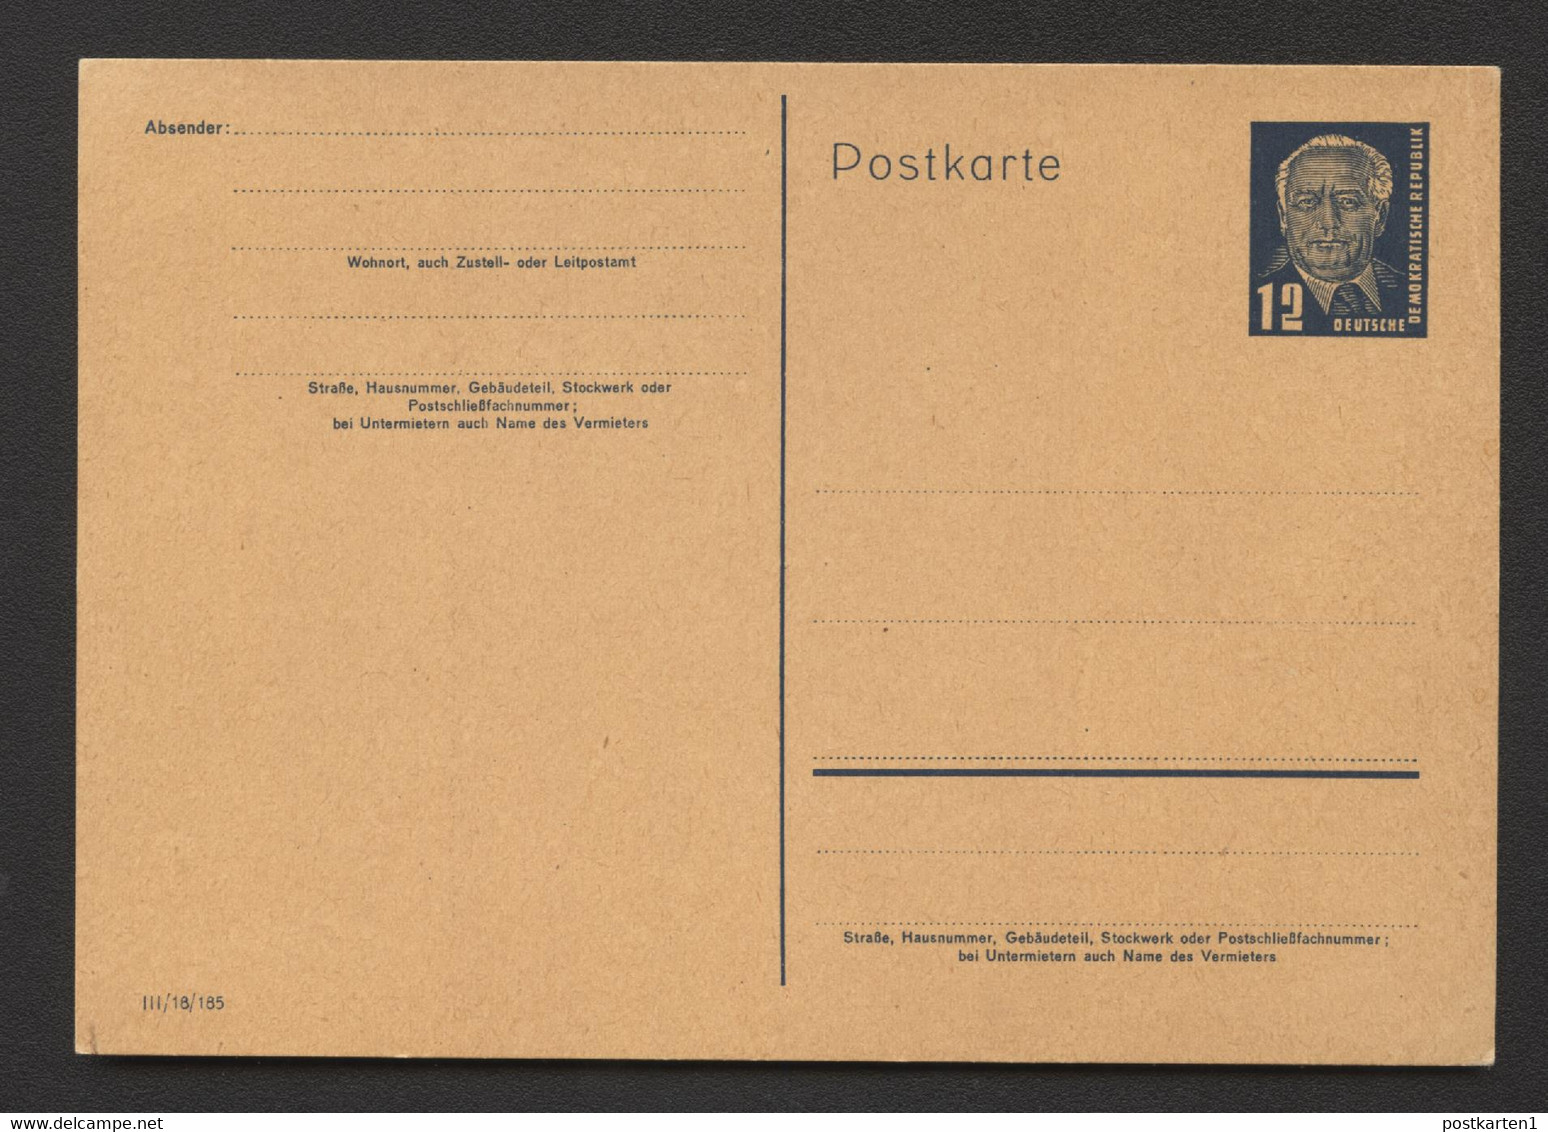 Postkarte P50/03 DV III/18/185 Postfrisch Feinst 1951 Kat.8,00 € - Postcards - Mint